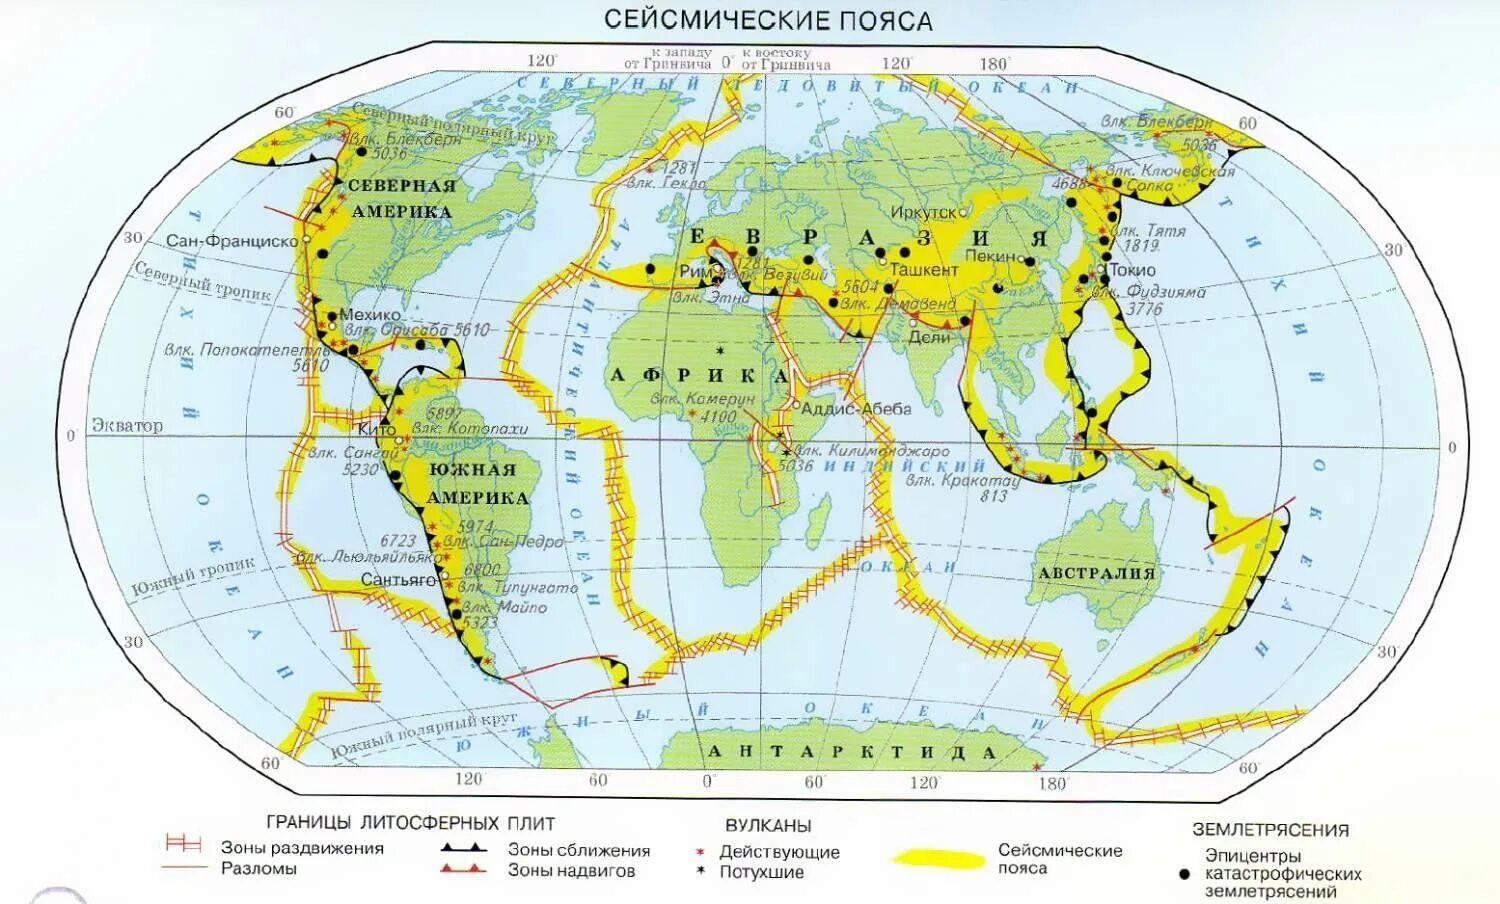 Взаимосвязь между землетрясениями. Границы литосферных плит и сейсмические пояса. Карта литосферных плит и сейсмических поясов. Зоны литосферных плит на карте.